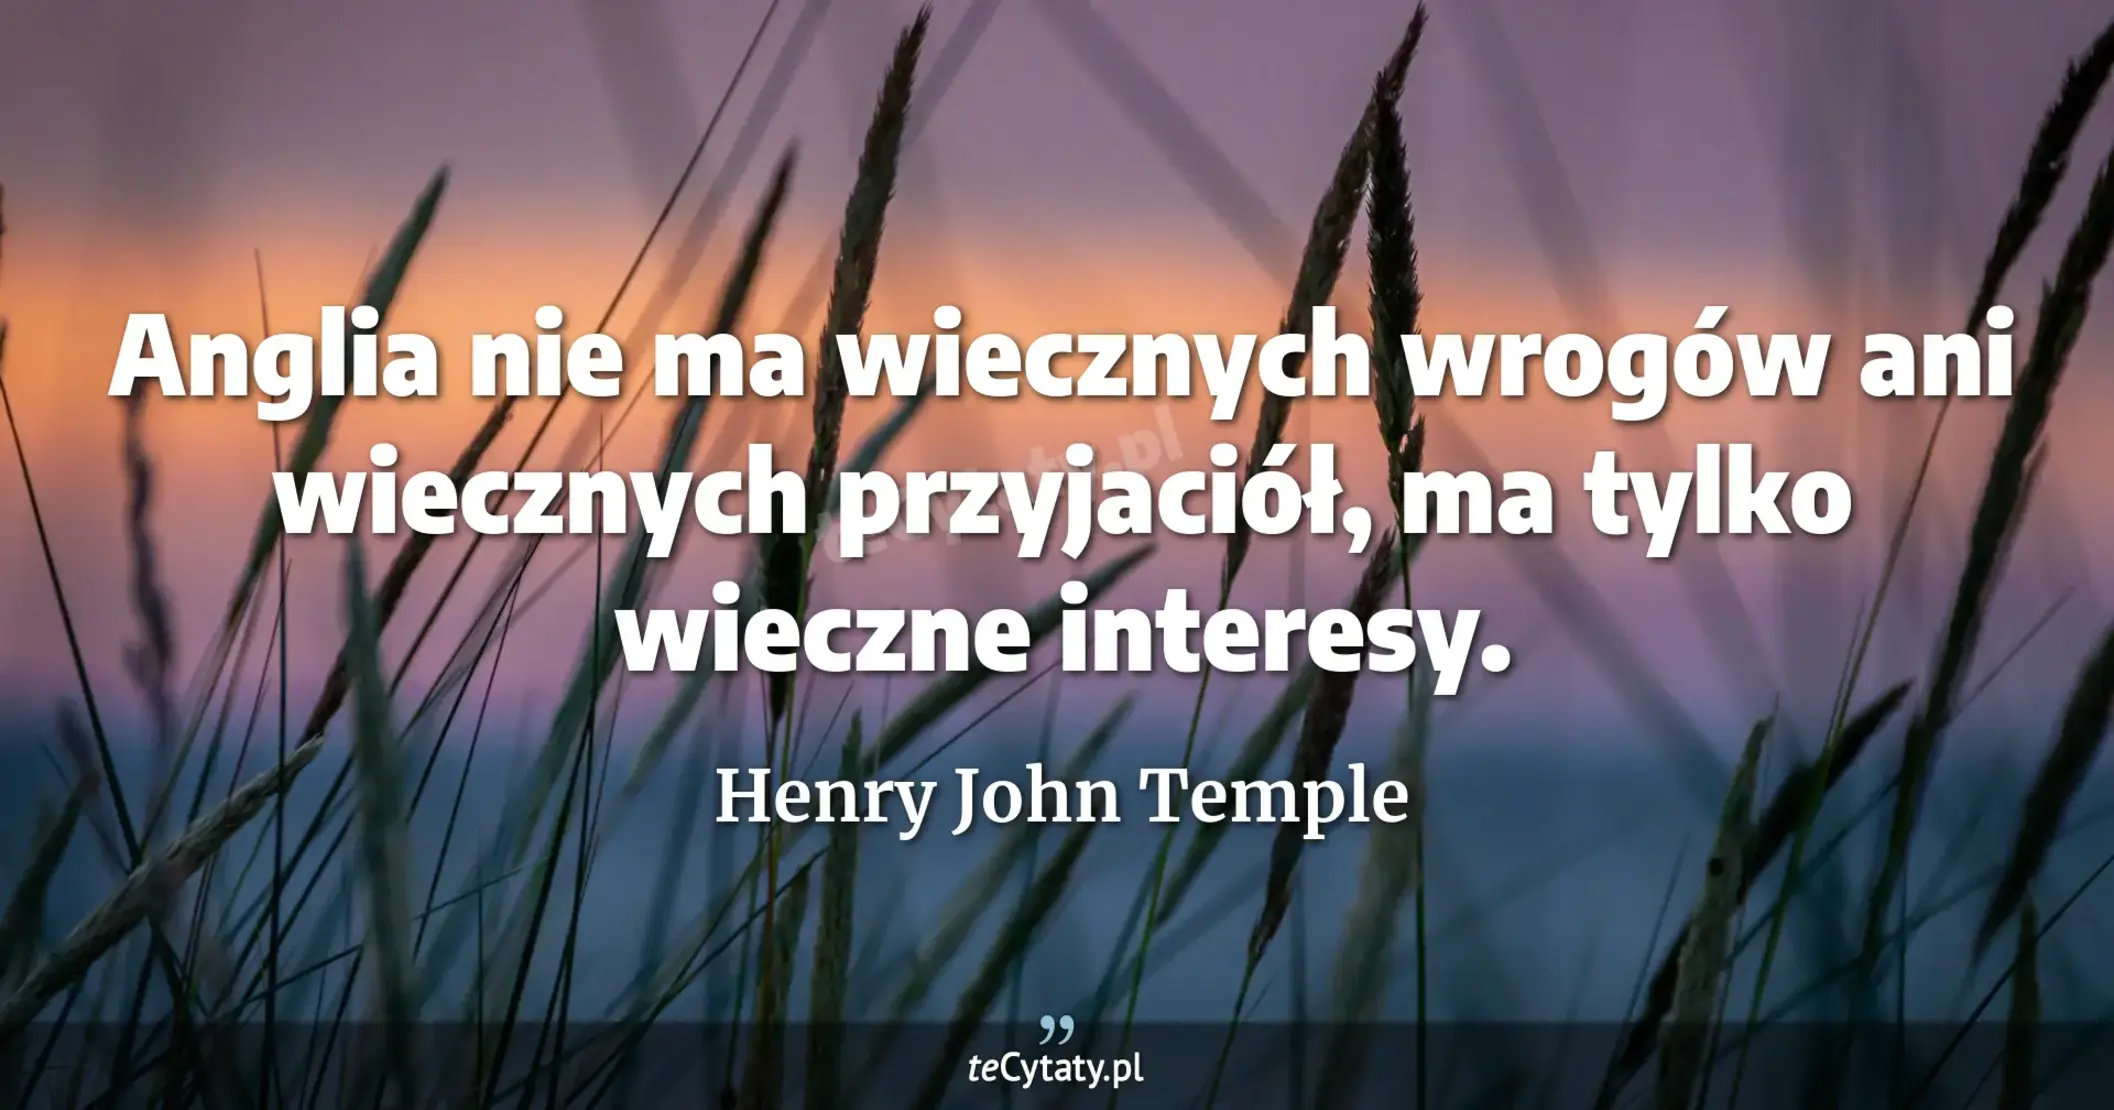 Anglia nie ma wiecznych wrogów ani wiecznych przyjaciół, ma tylko wieczne interesy. - Henry John Temple